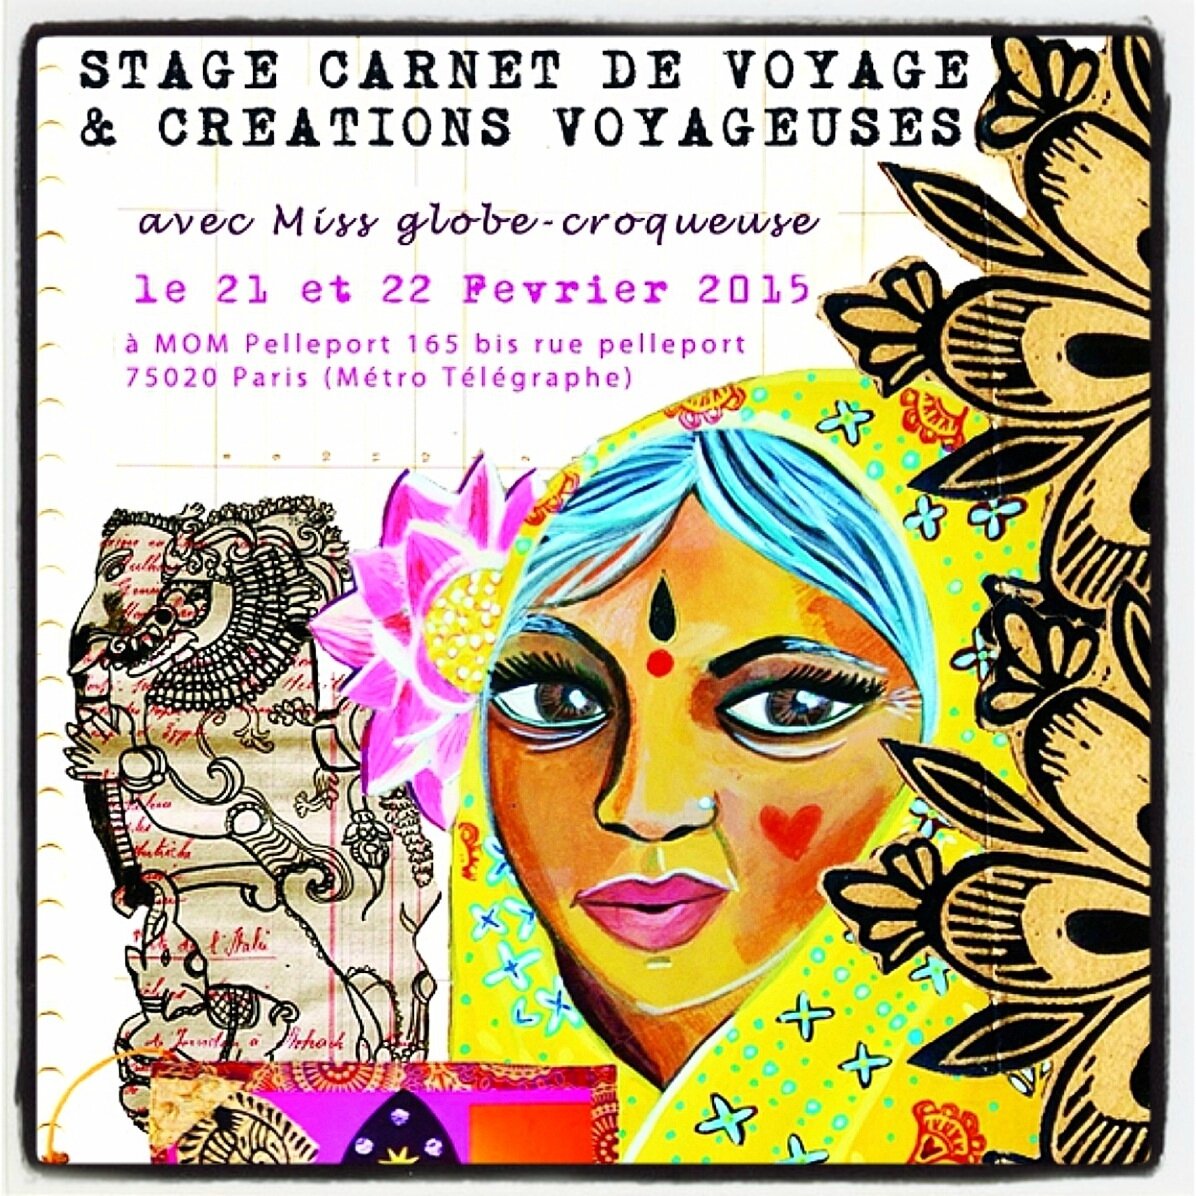 extrait affiche stage carnet voyage paris fev2015